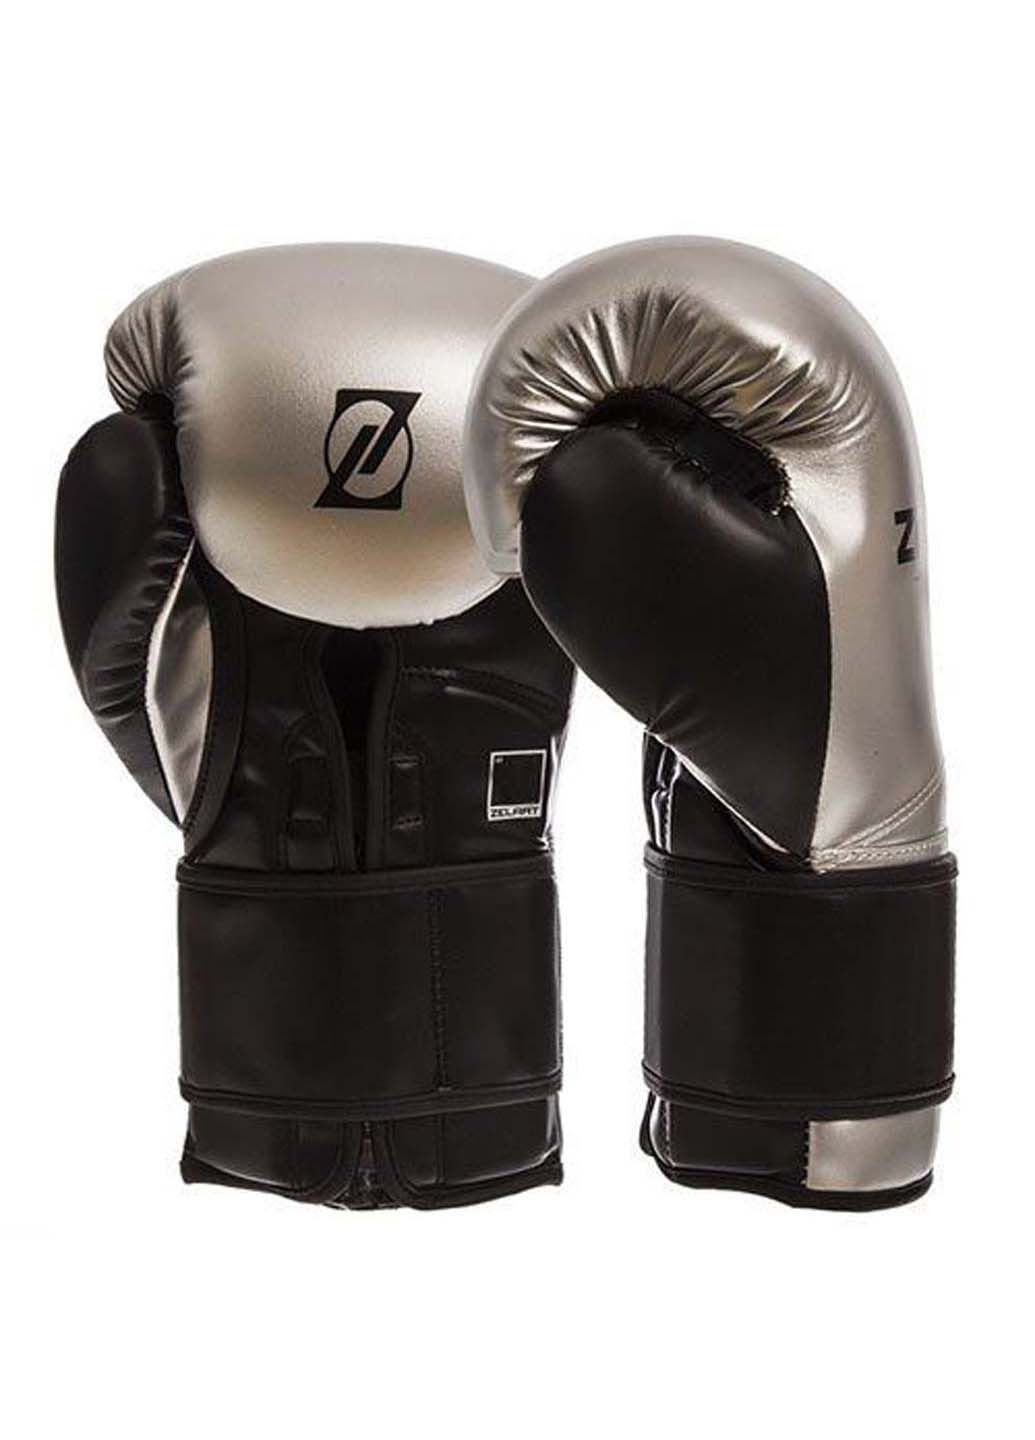 Перчатки боксерские BO-1384 14oz Zelart (285794245)